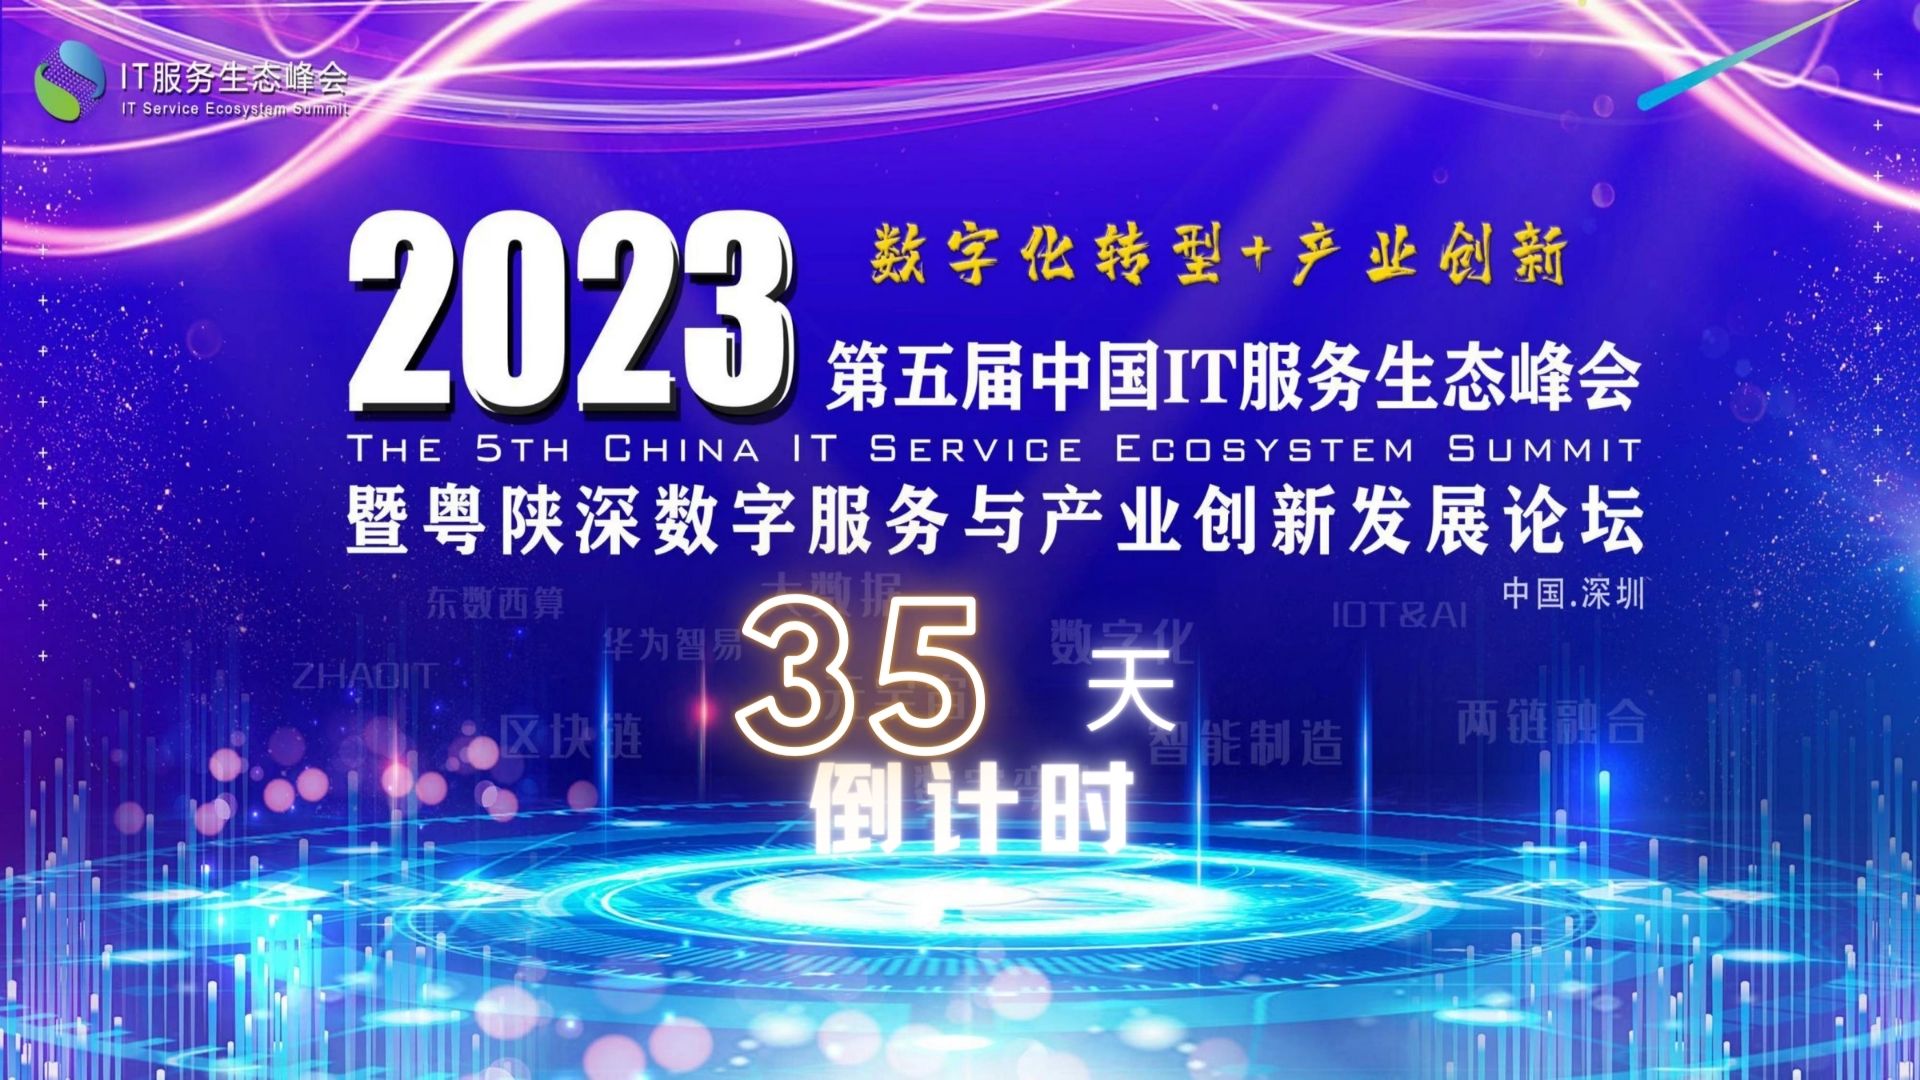 原陕西省工信厅大数据产业处处长曹栋梁先生确认出席2023第五届中国IT服务生态峰会